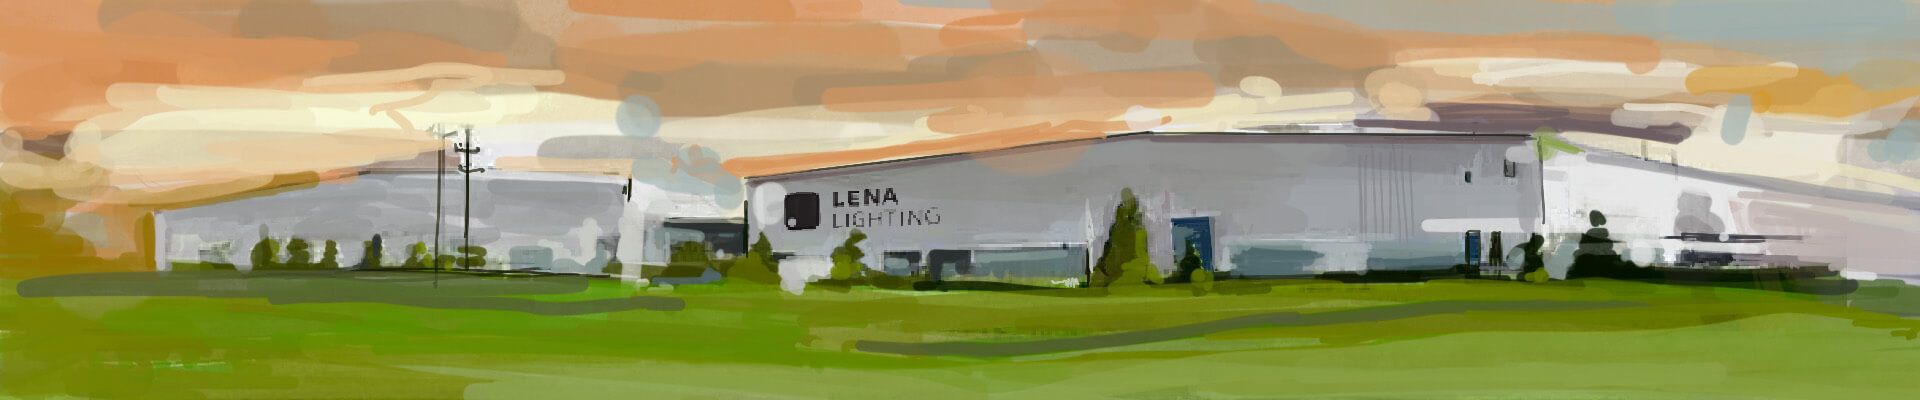 Lena Lighting- továrna a sklad